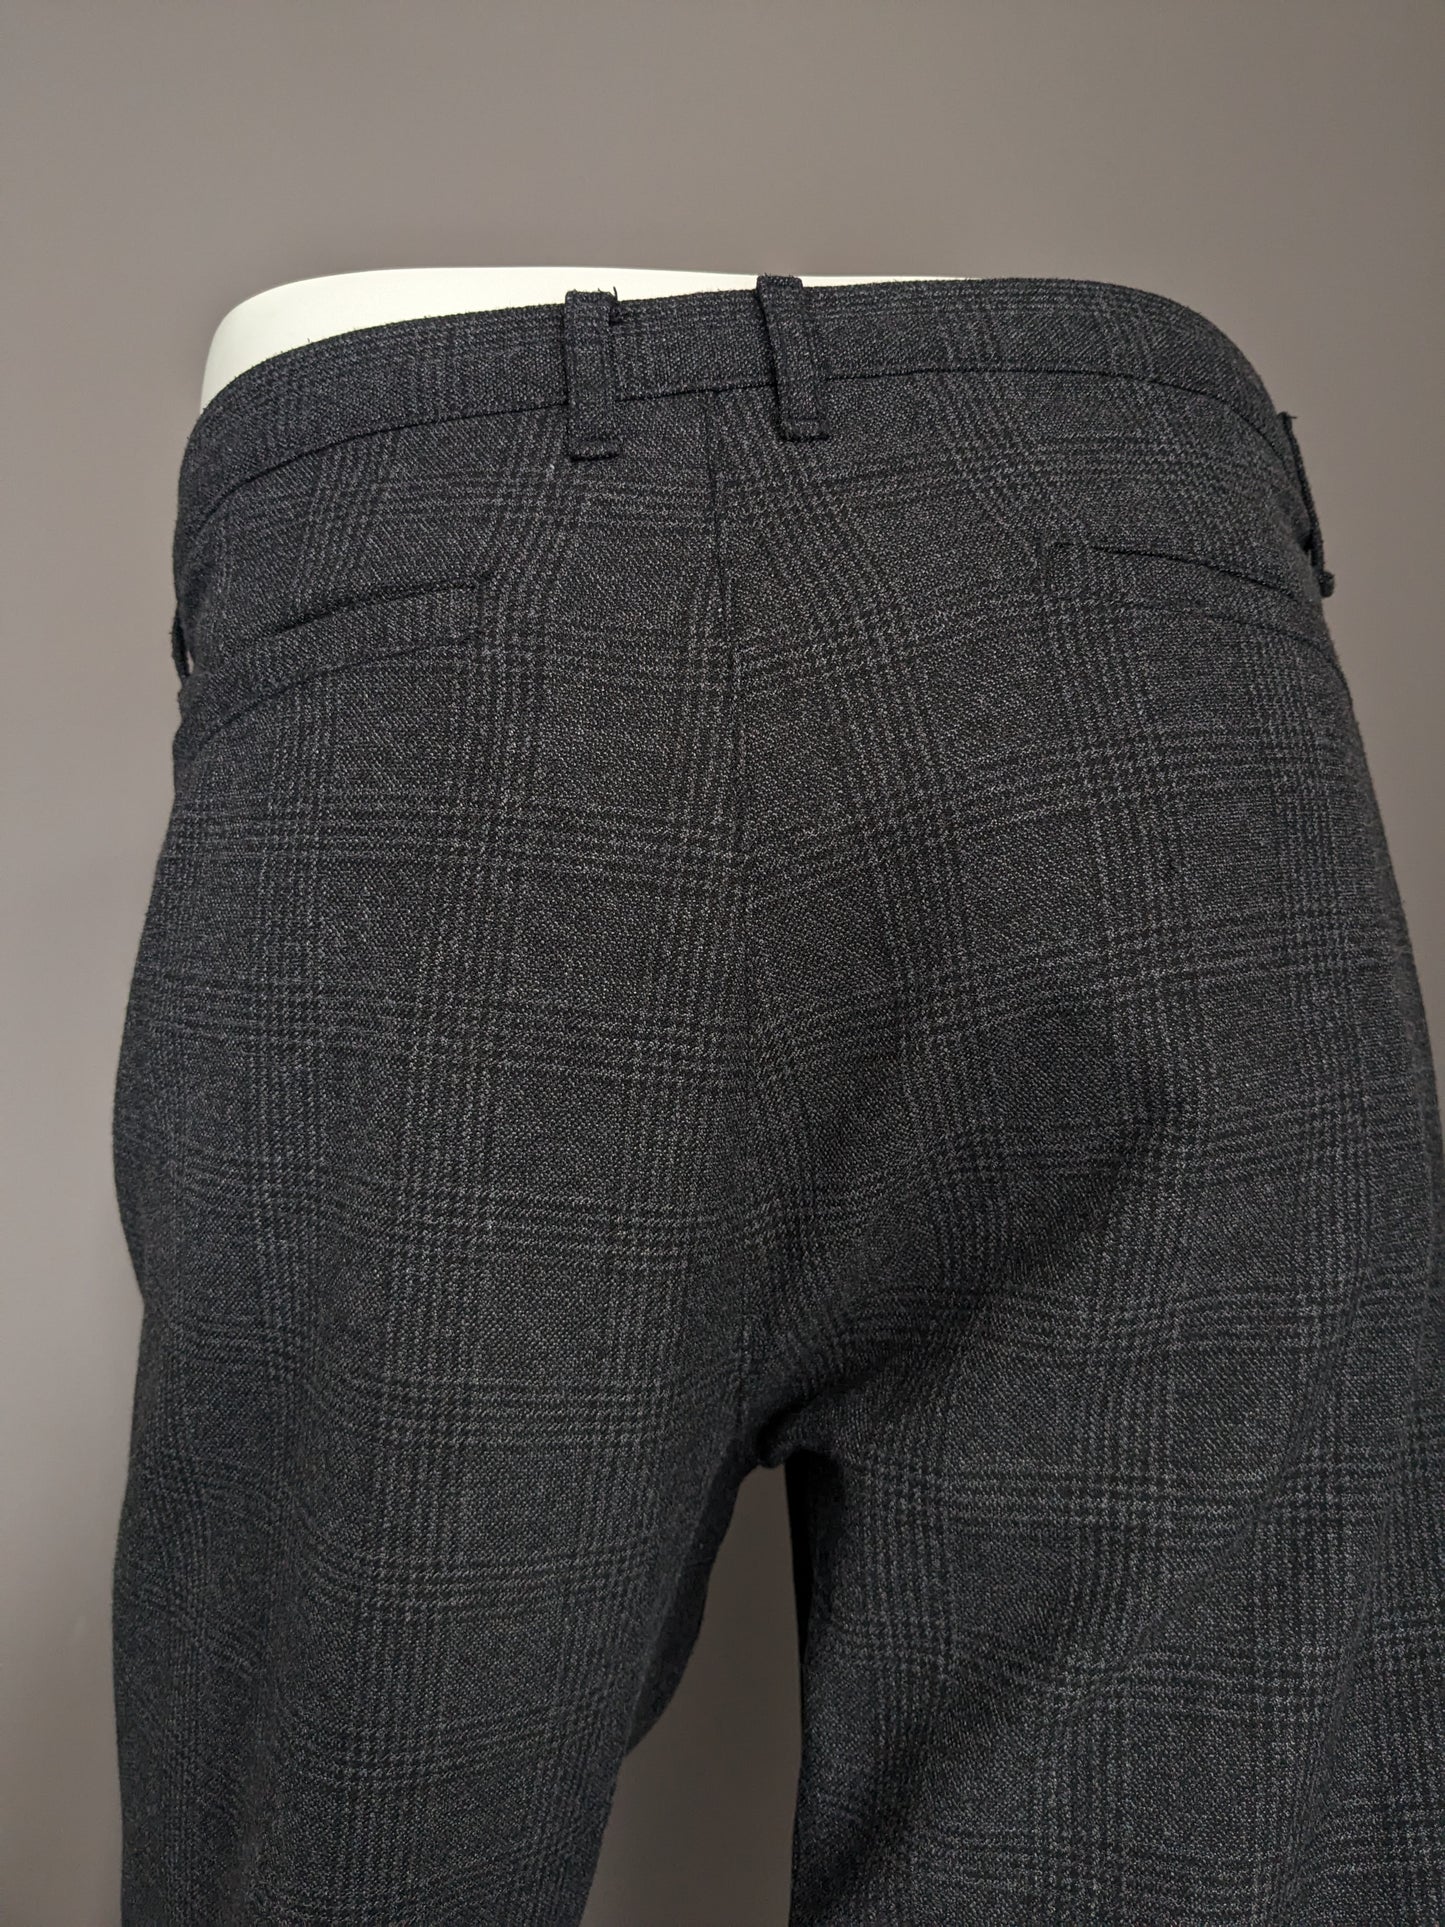 Pantalon / pantalon de vision LCW. Black gris vérifié. Slim Fit recadré. W36 - L30.